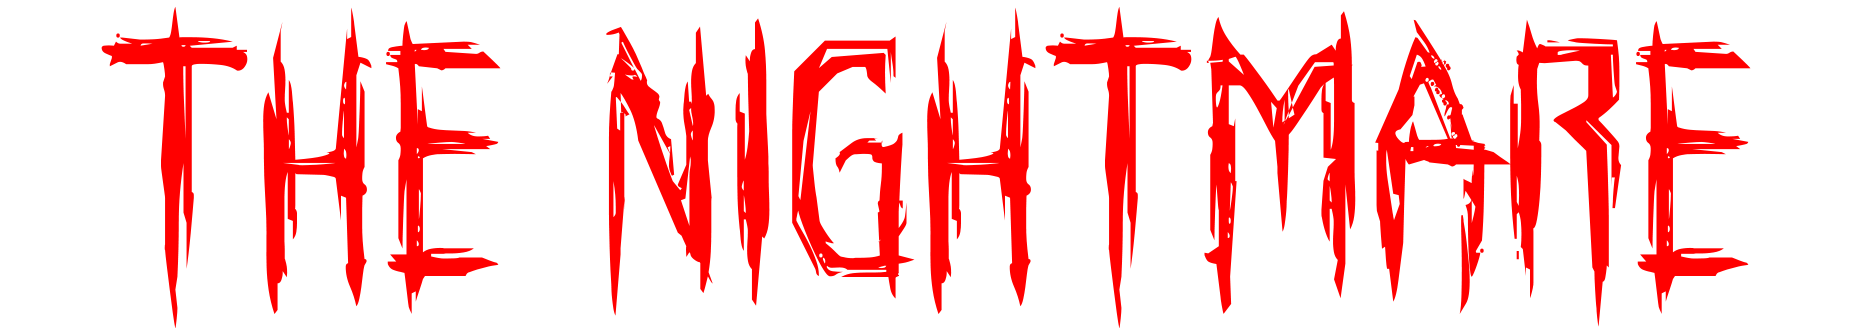 The Nightmare - Ludum Dare 47